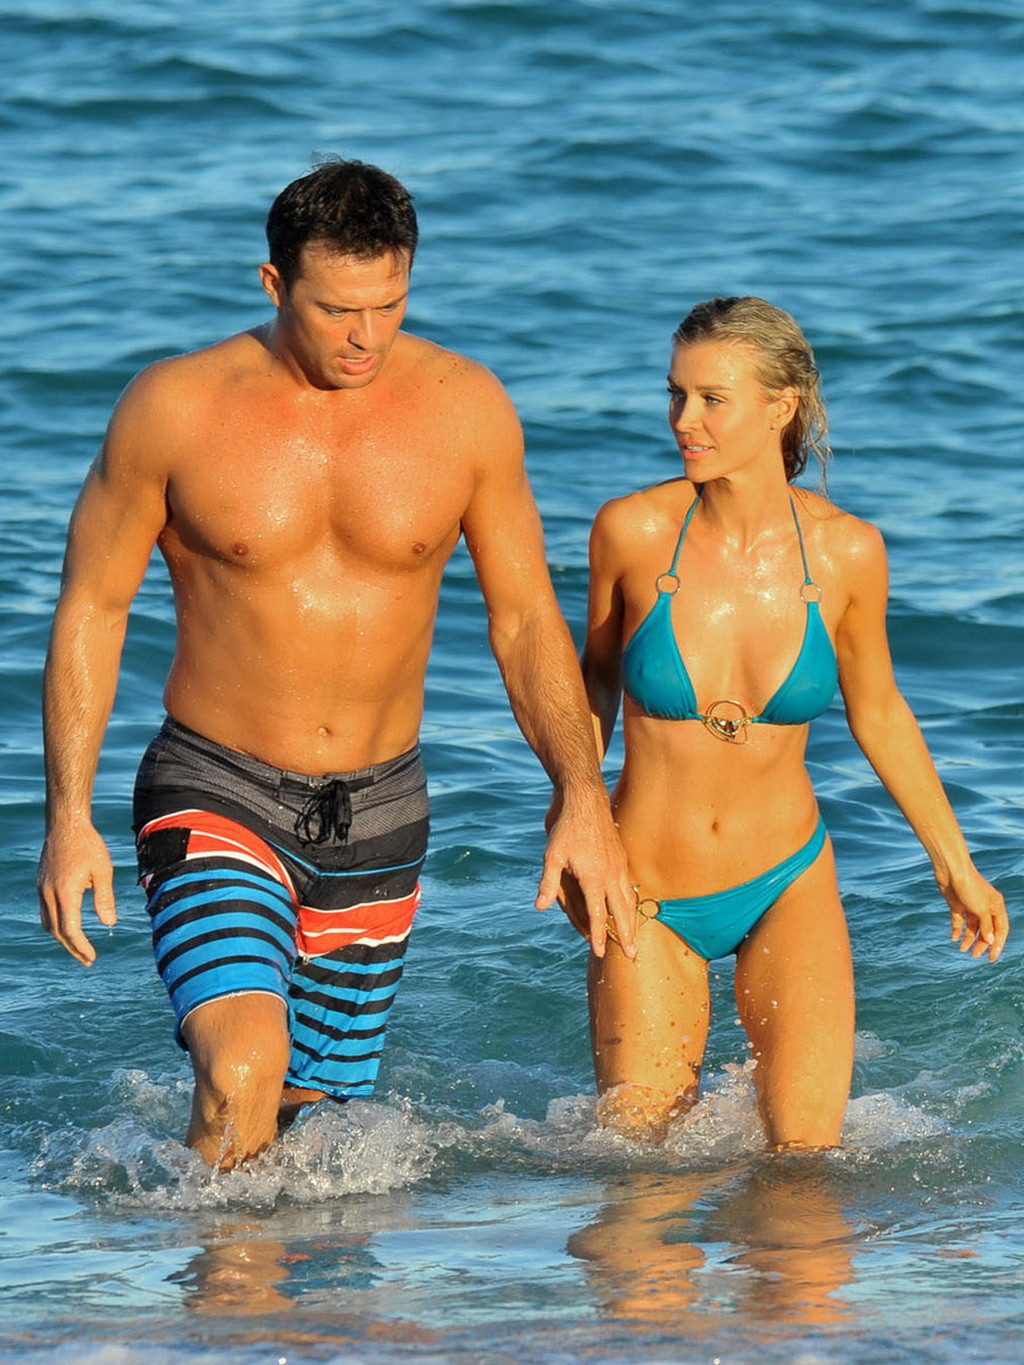 Joanna krupa en bikini mostrando el culo de pokies mientras jode a su novio en una playa #75249112